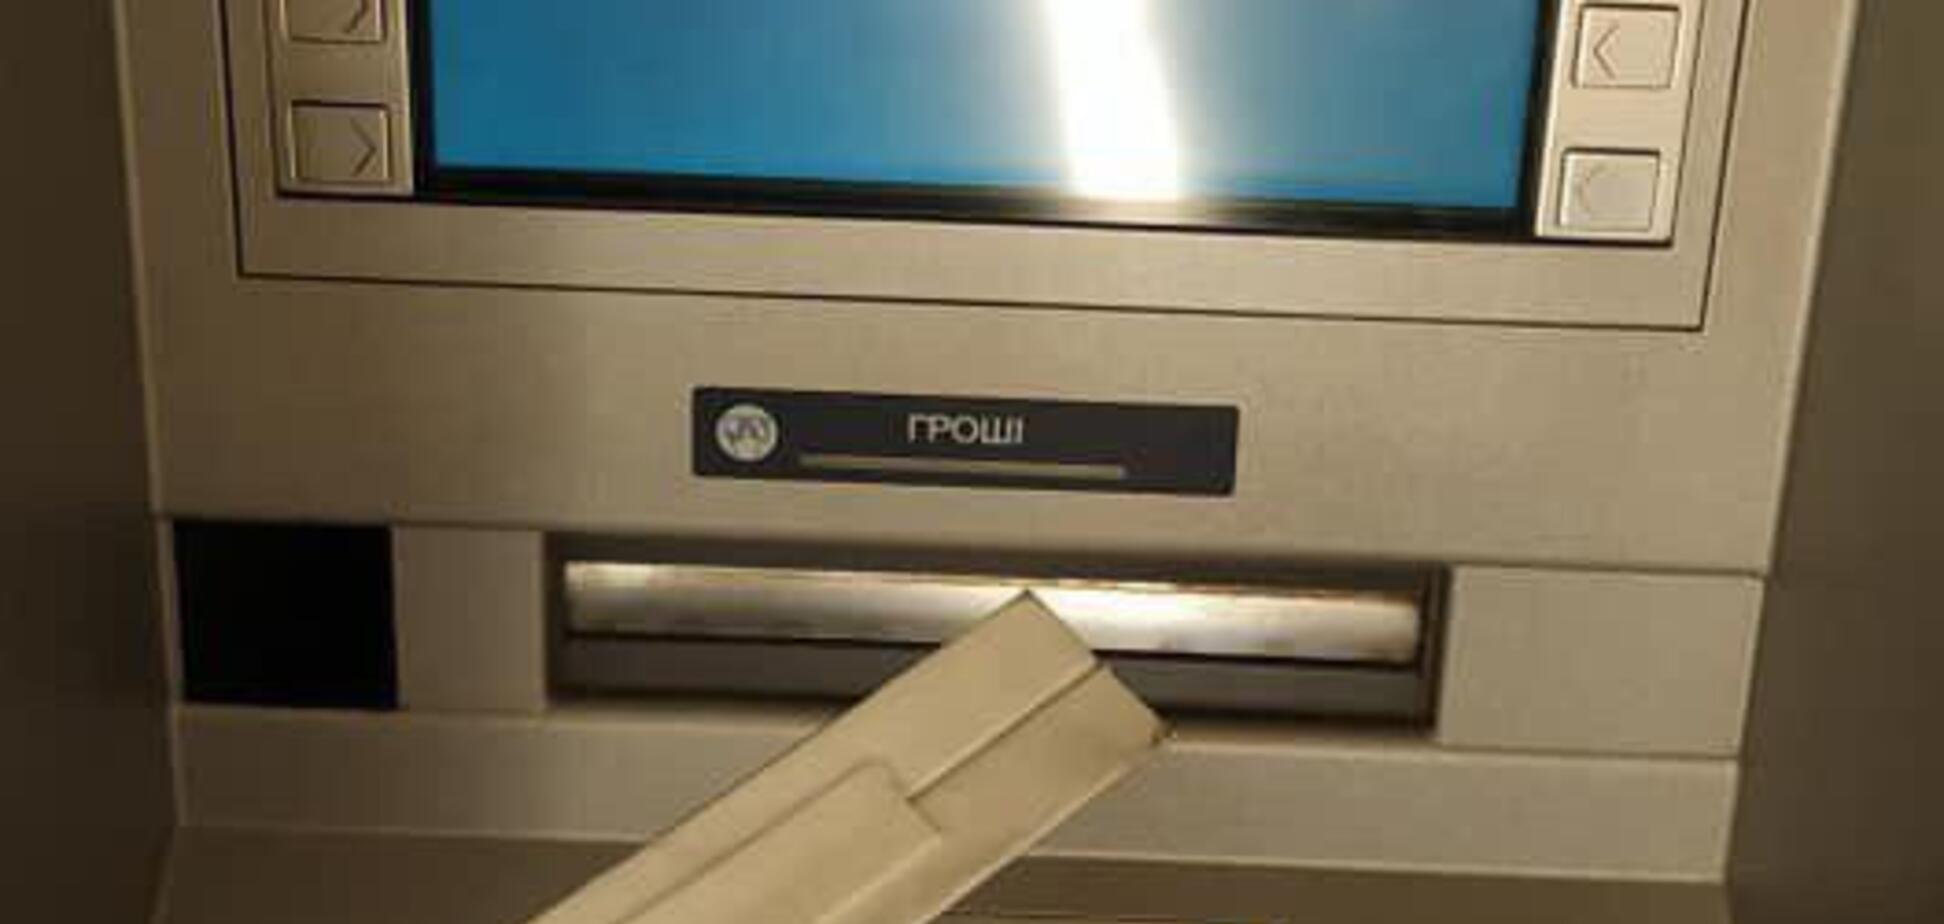 'Будьте осторожны!' Украинцев предупредили о новой афере с банкоматами